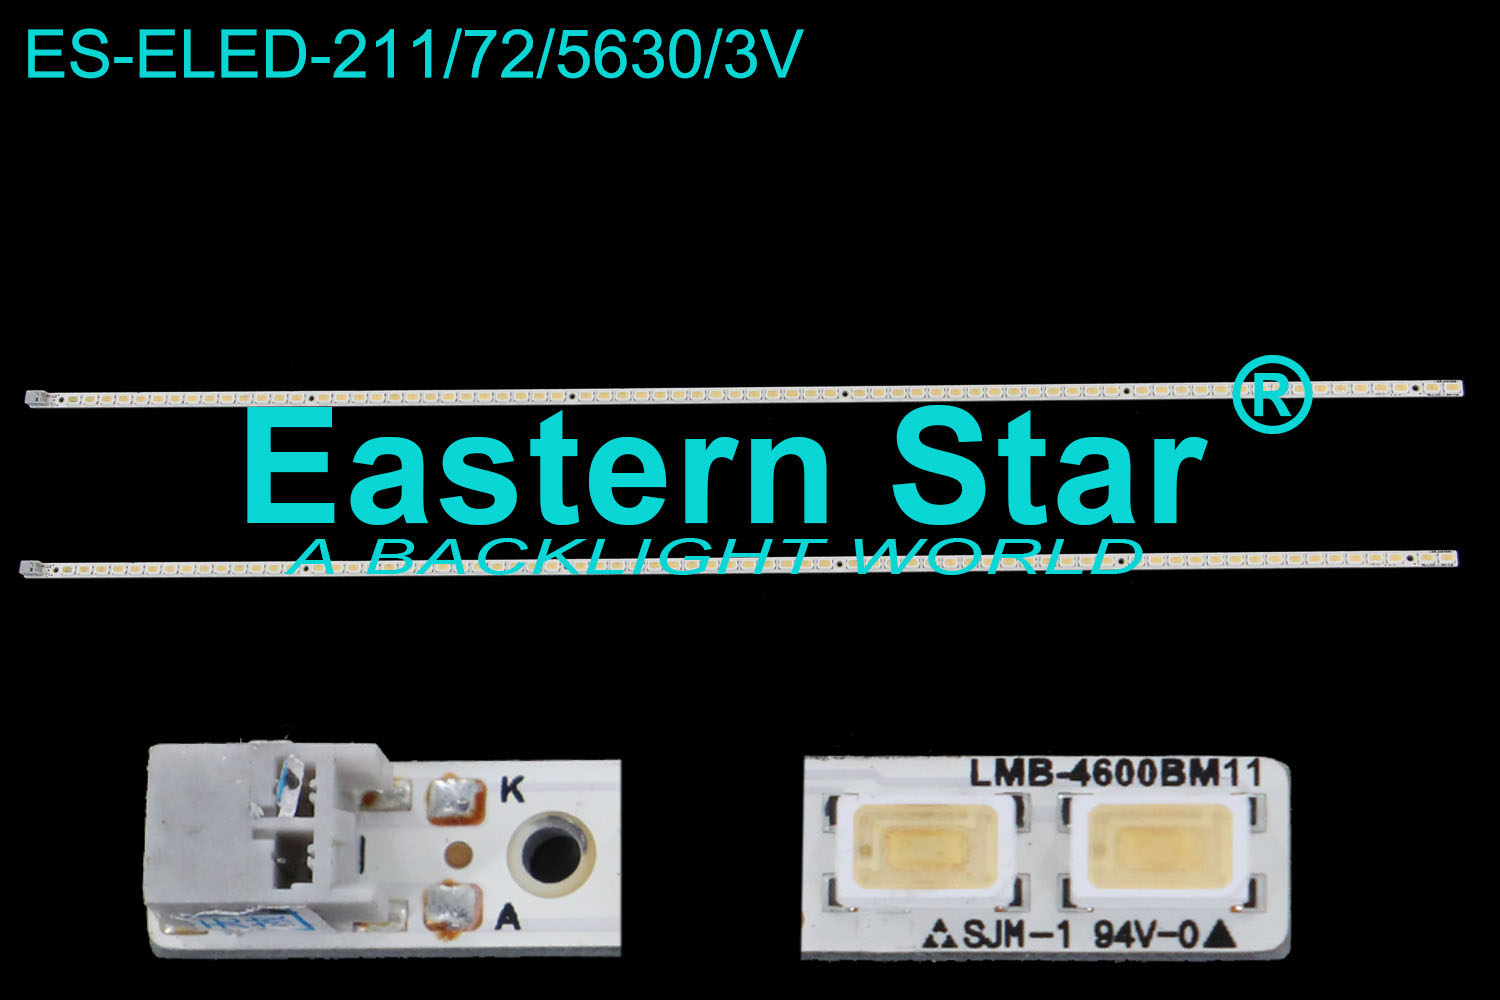 ES-ELED-211 ELED/EDGE TV backlight 46''  use for Samsung  LMB-4600BM11 SLED 2010SVS46 60/240HZ  LJ64-02592A LED STRIPS(4)